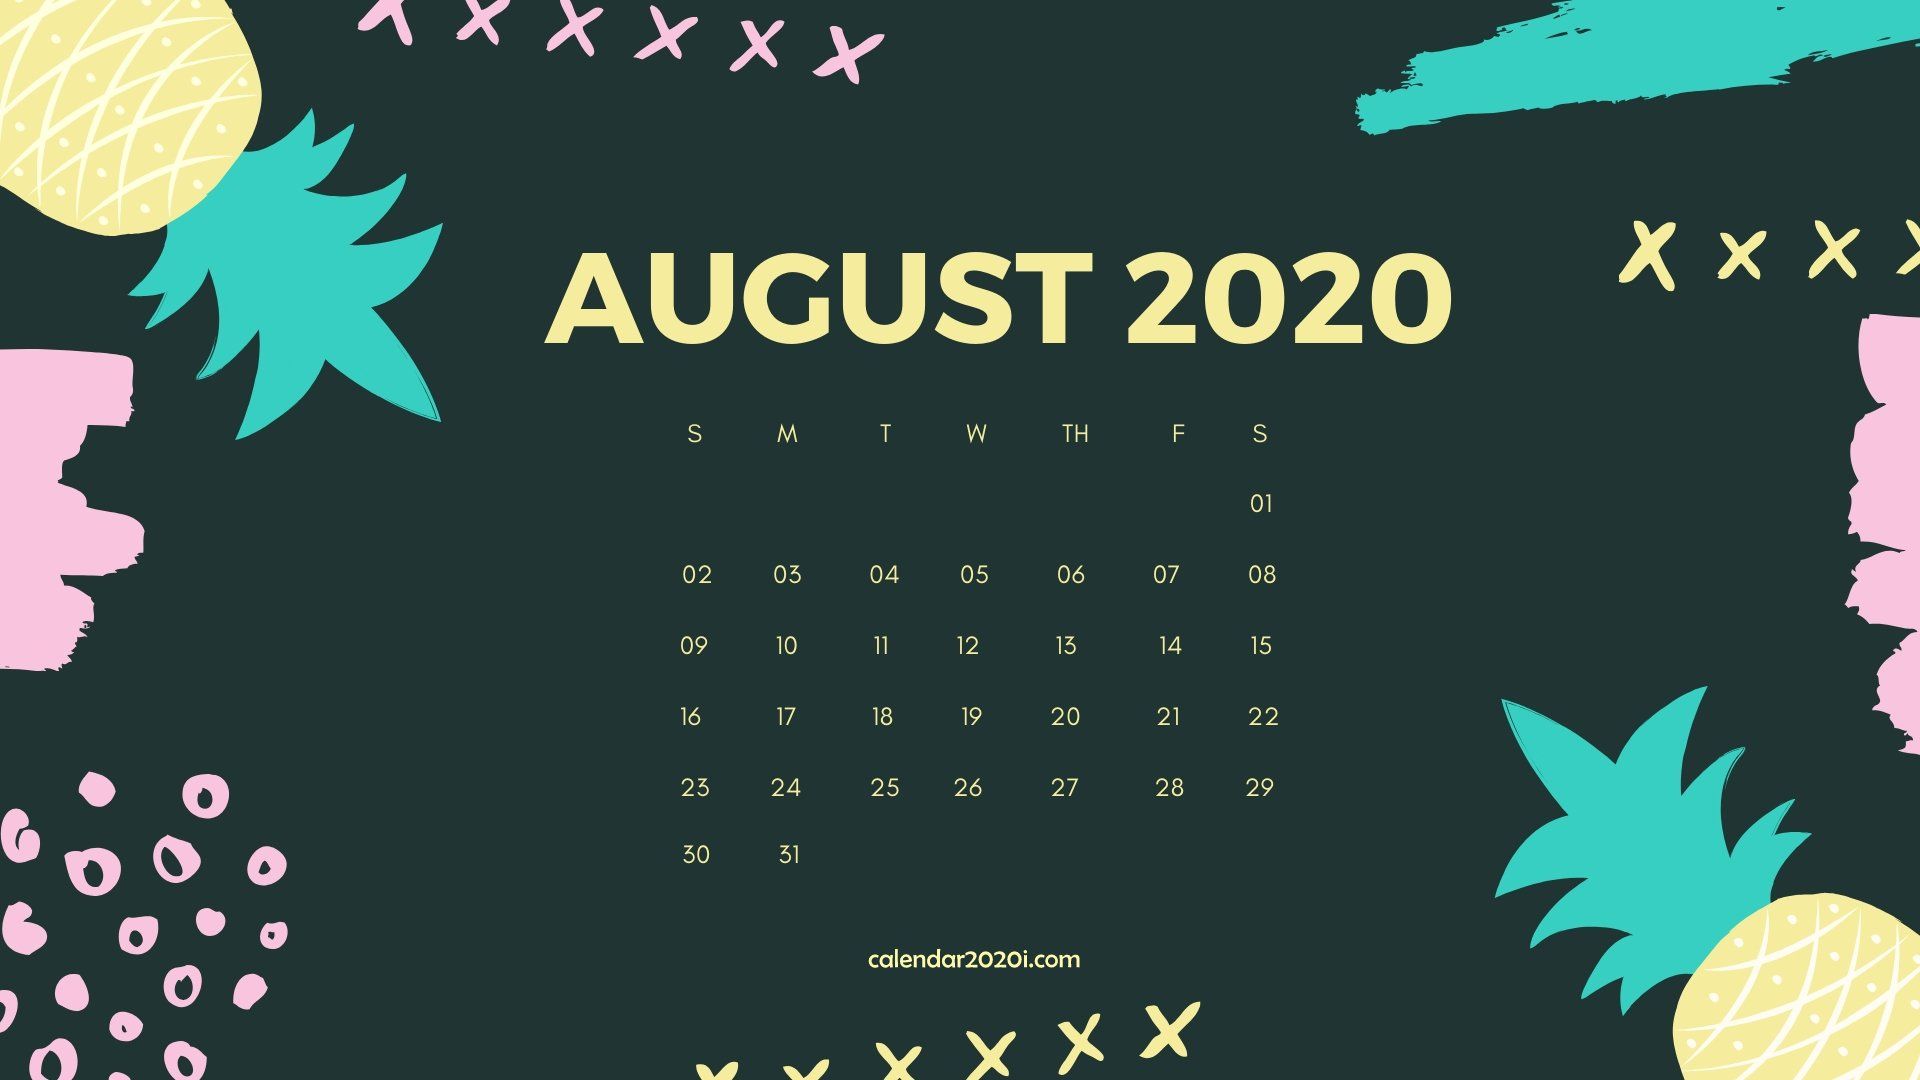 August 2020 Calendar Desktop Wallpaper in 2019 August wallpaper